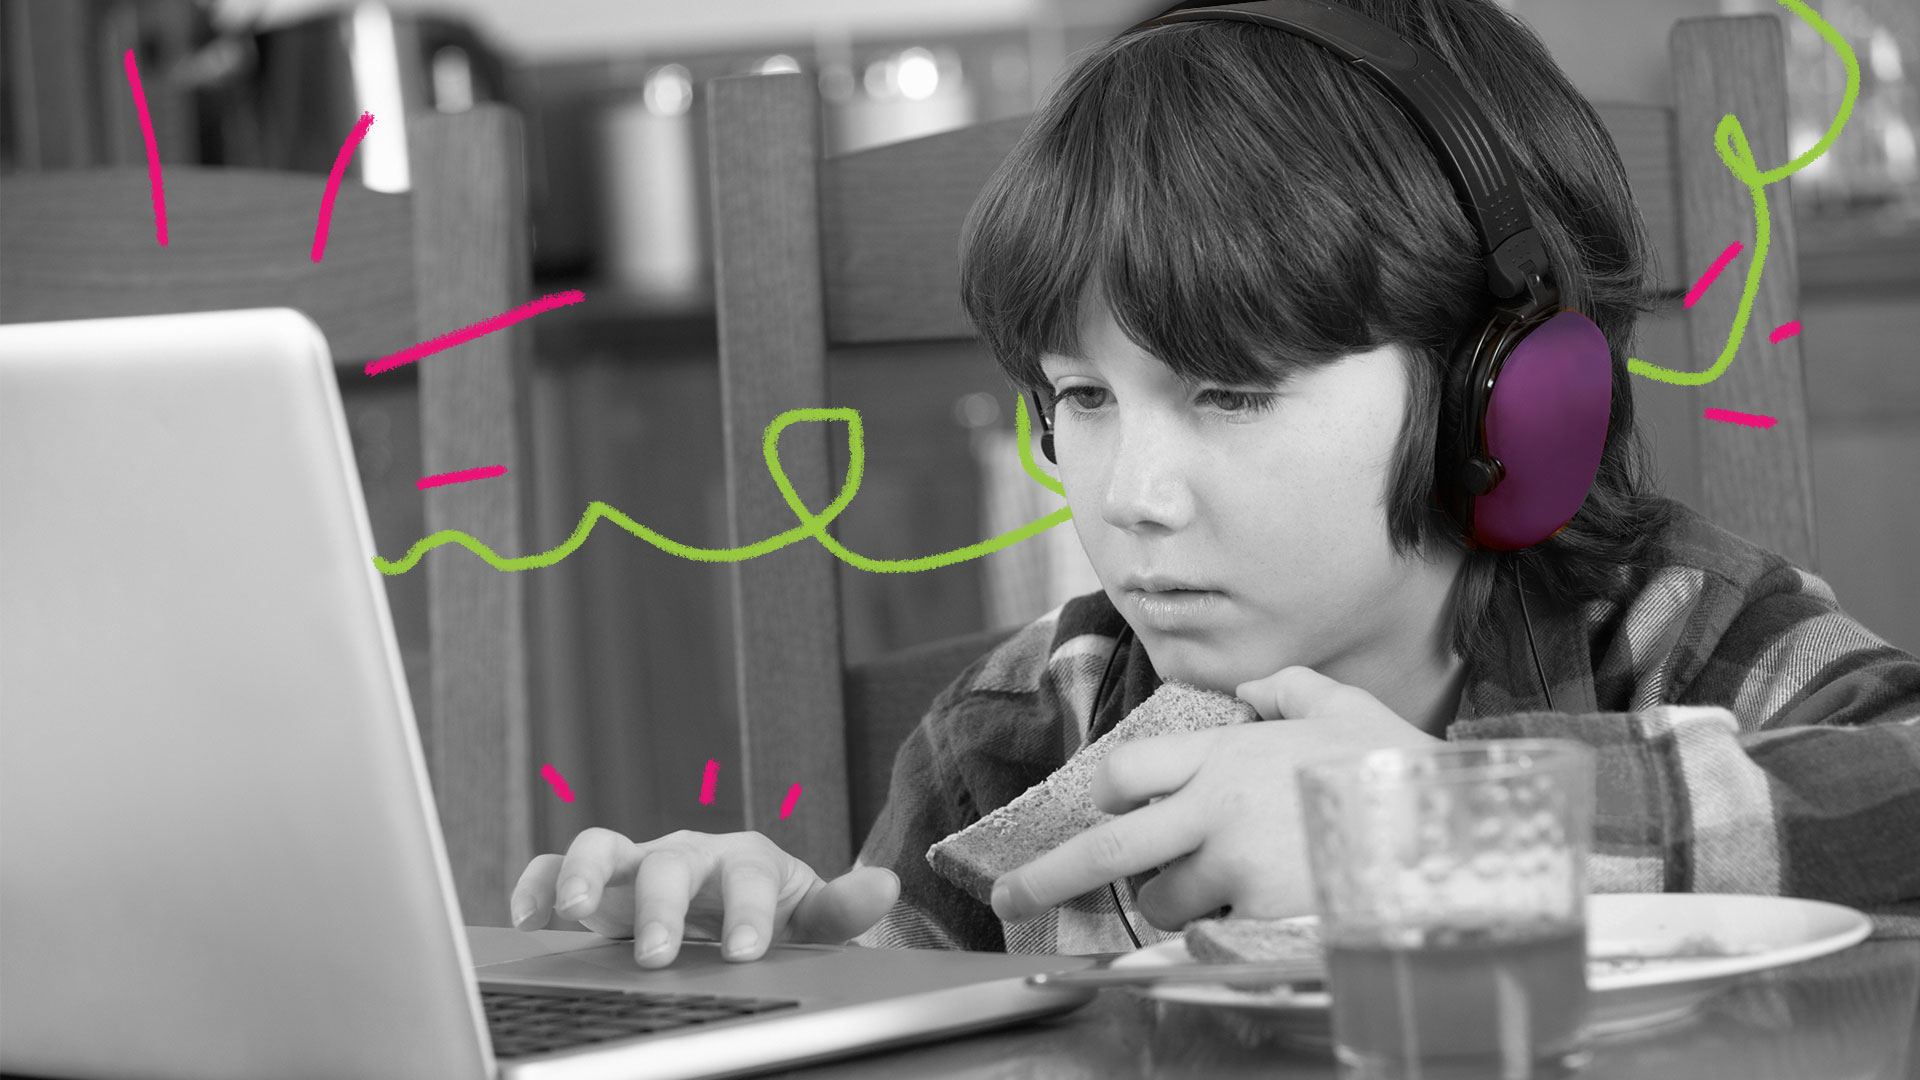 Menino em frente ao notebook olha concentrado a tela e utiliza um headfone roxo nos ouvidos.